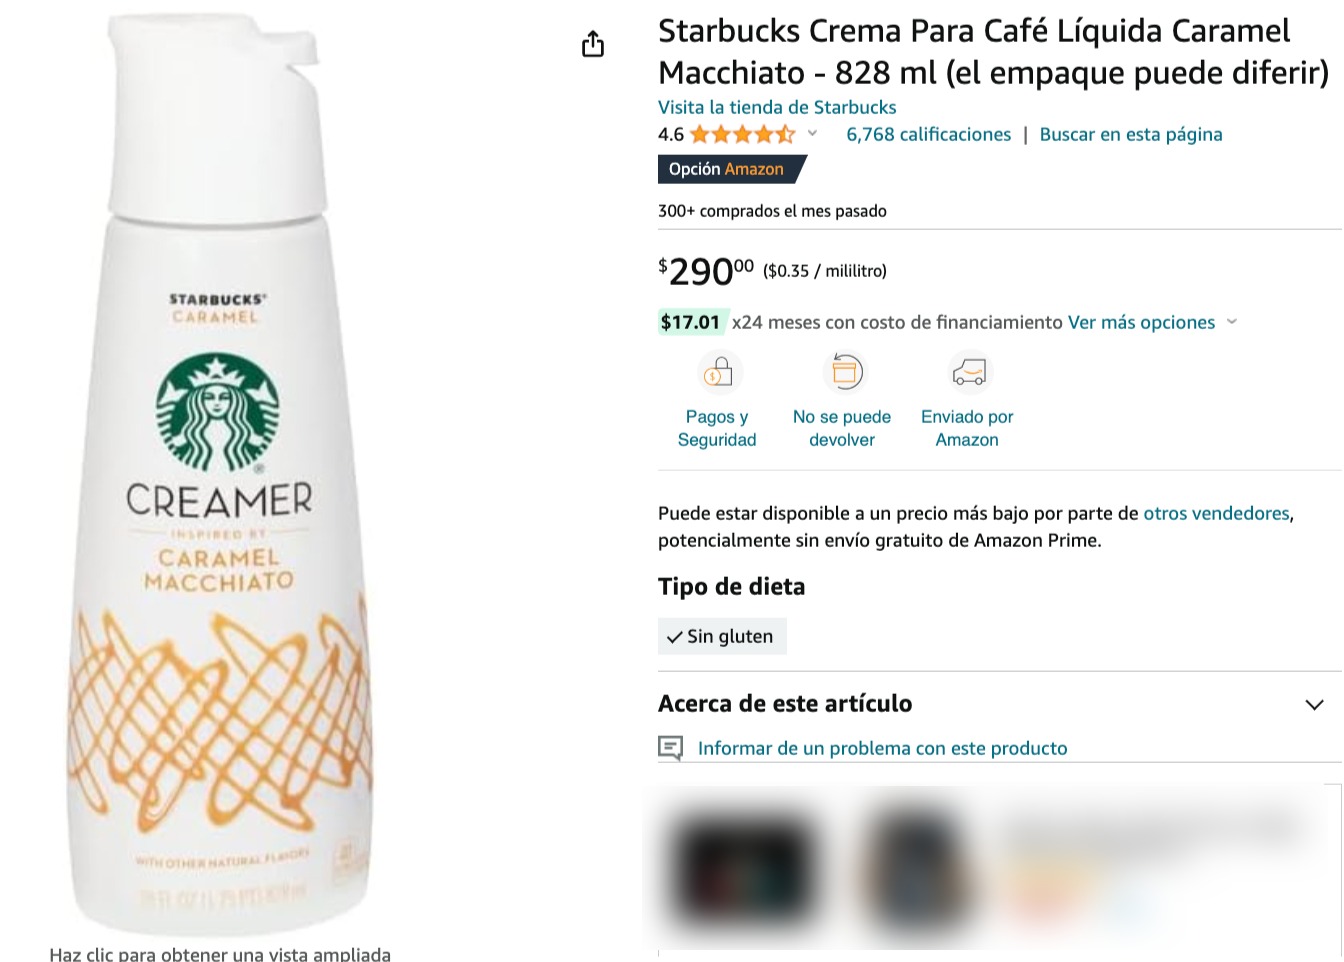 La crema de Caramel Macchiato de Starbucks es uno de los productos que puedes comprar en Amazon.